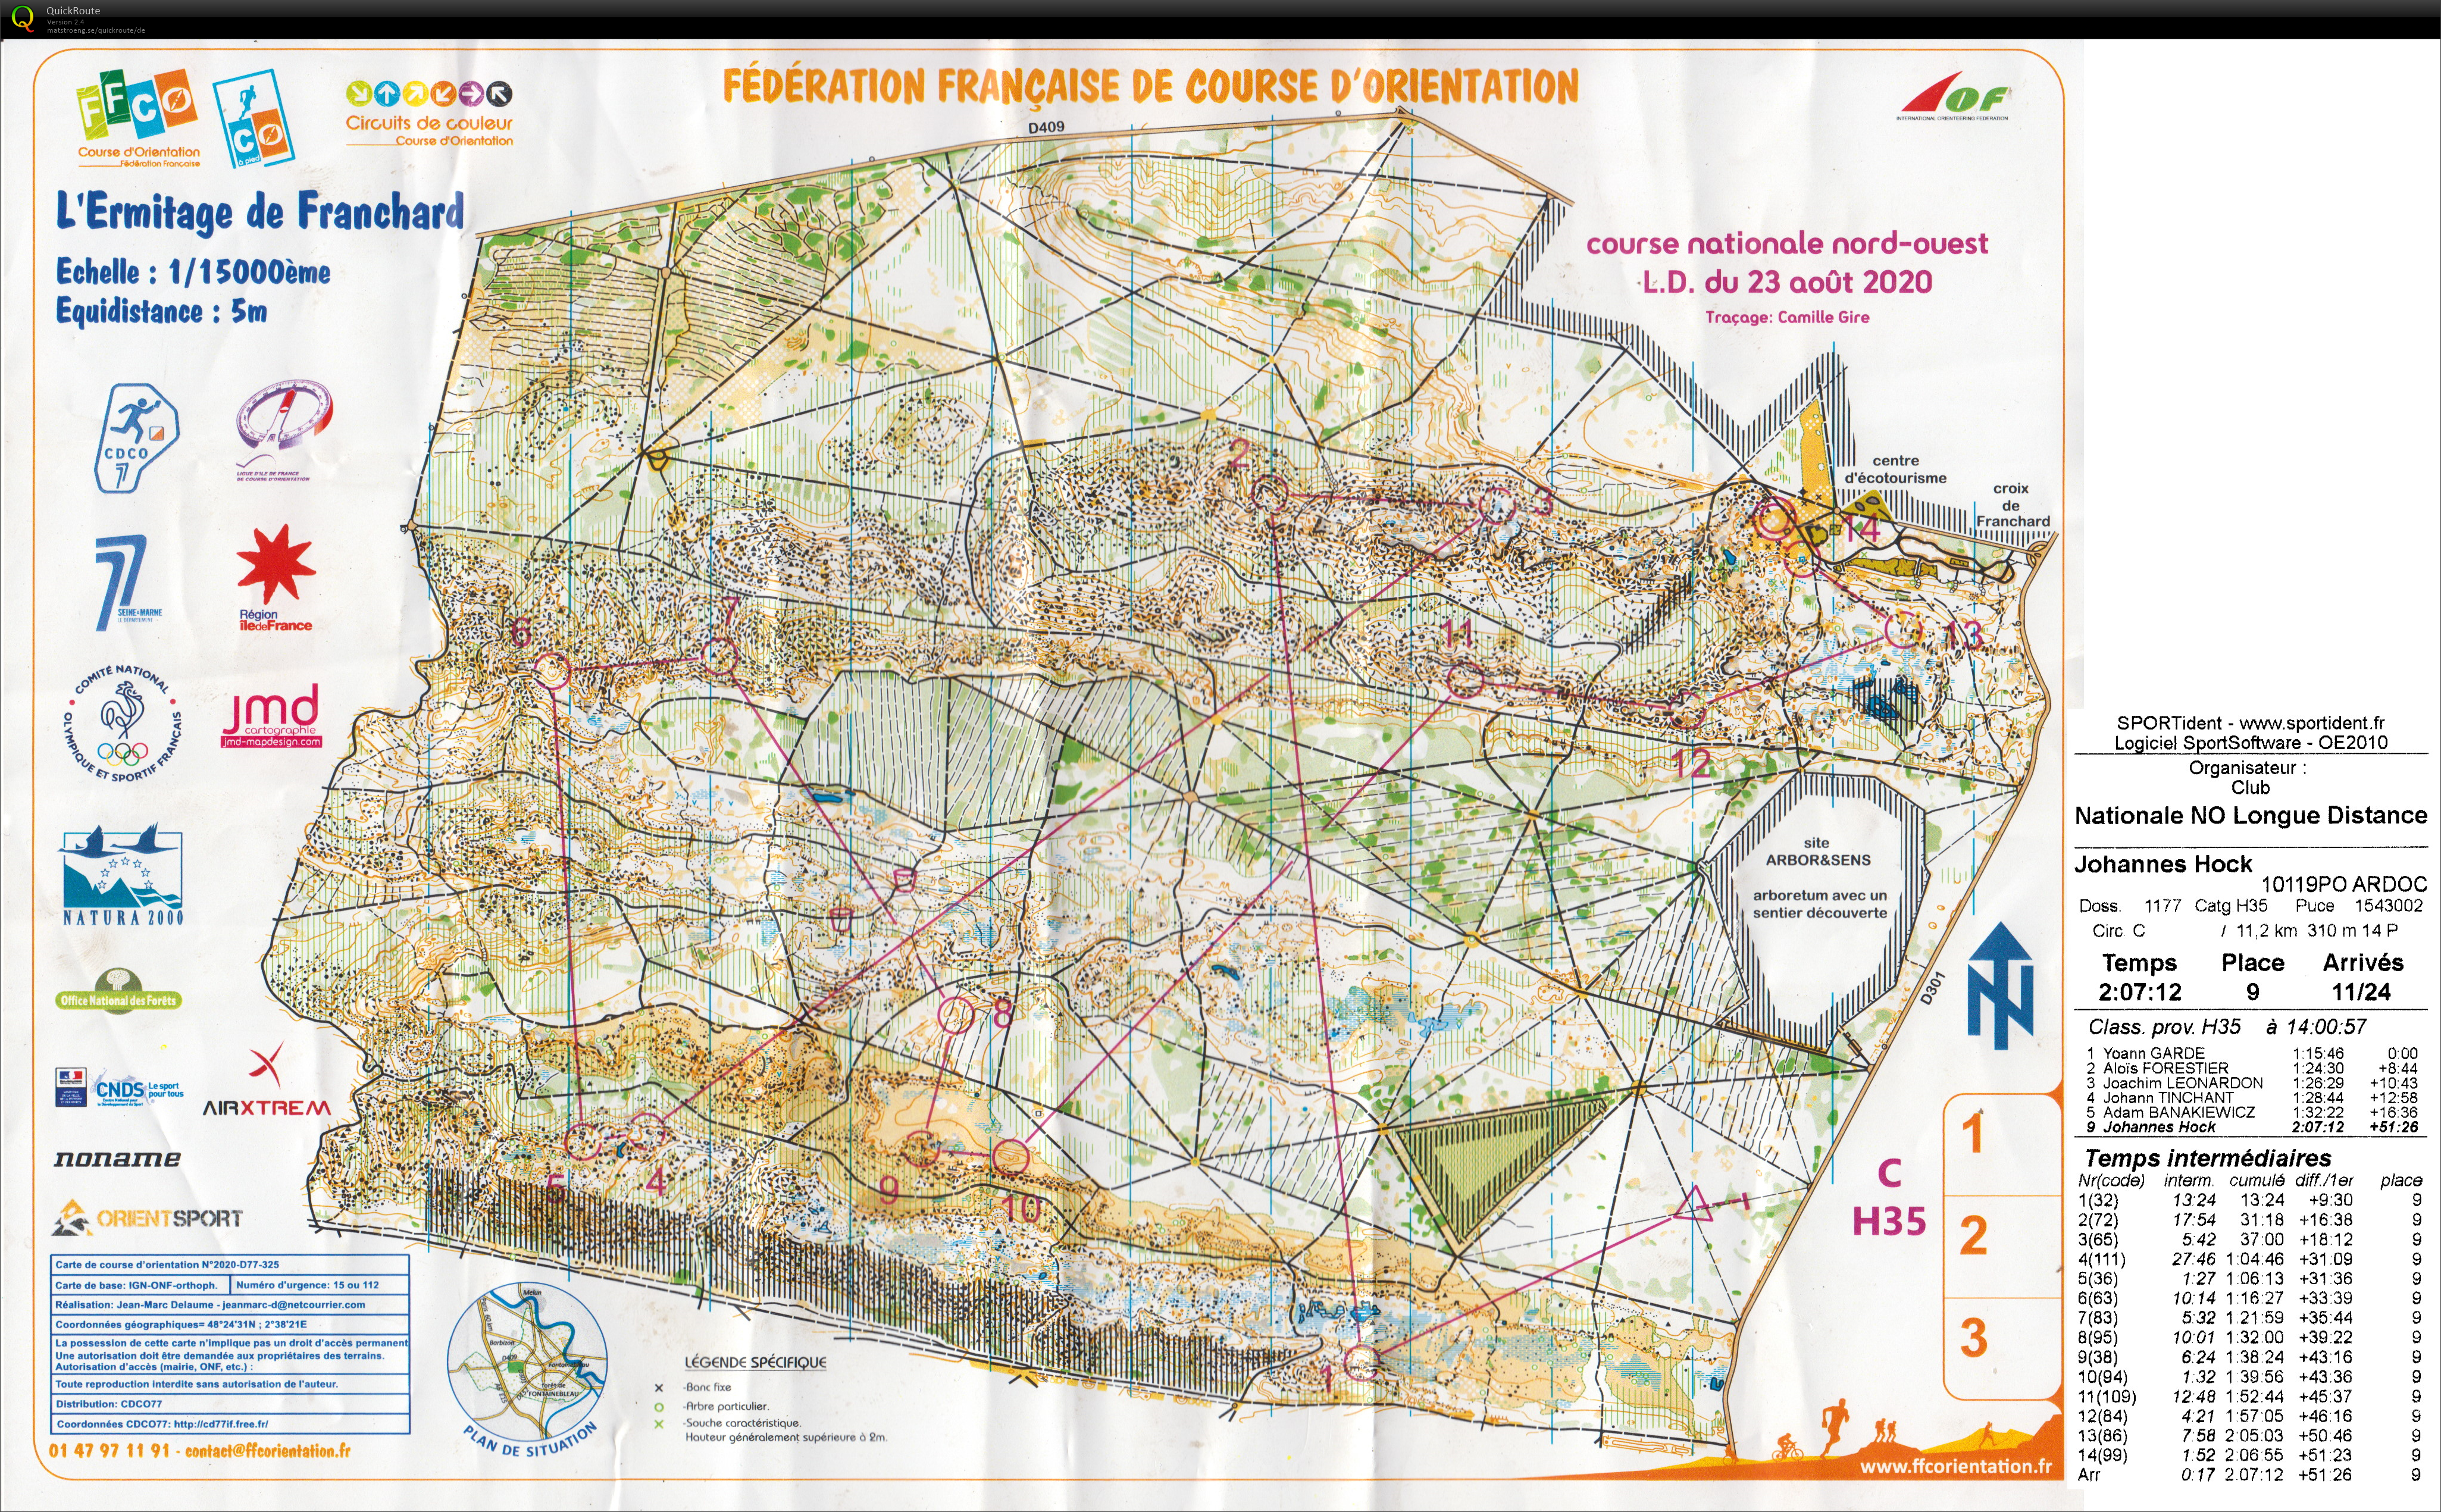 Course nationale L.D. Fontainebleau (23/08/2020)